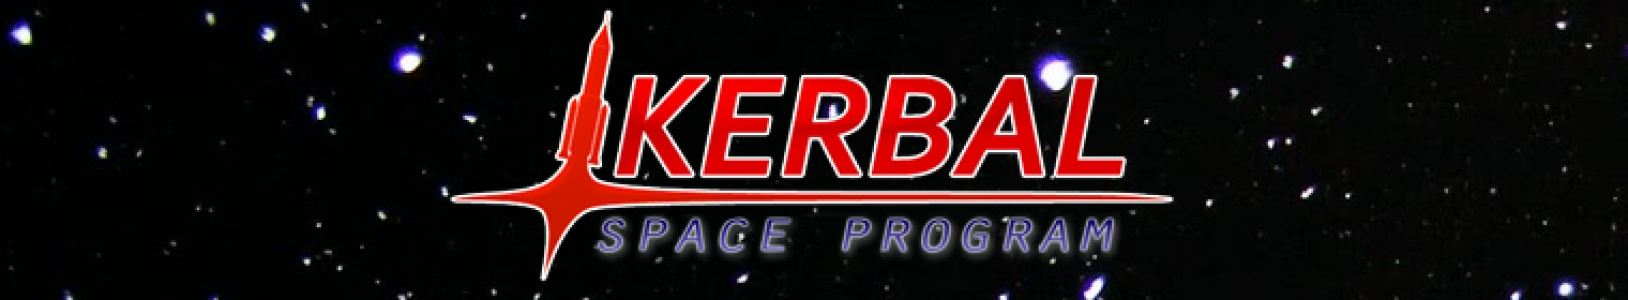 Kerbal Space Program banner